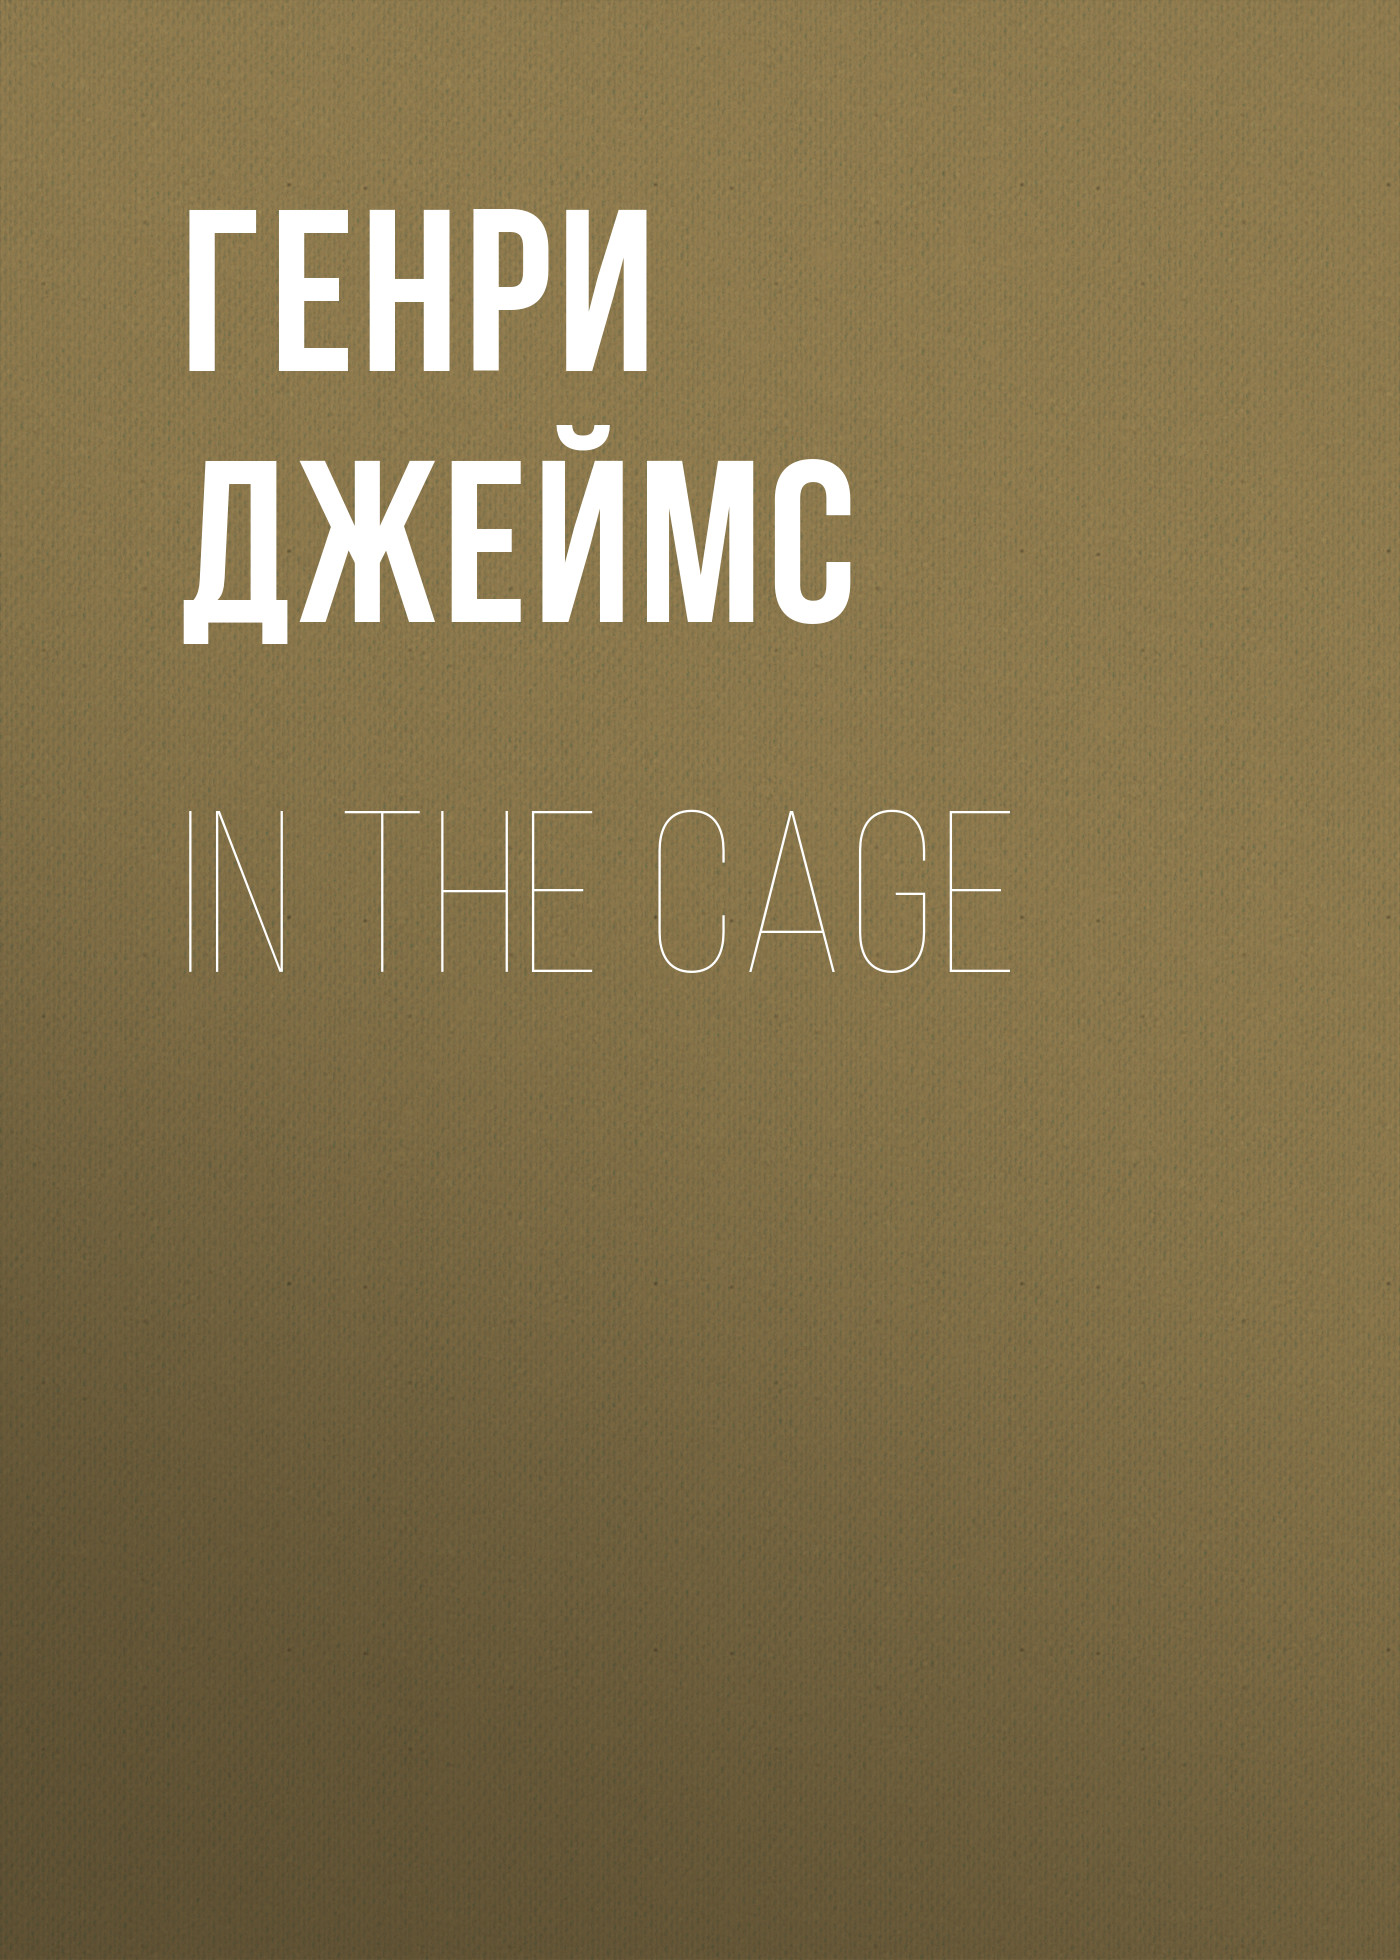 Книга In the Cage из серии , созданная Генри Джеймс, может относится к жанру Зарубежная классика, Зарубежная старинная литература. Стоимость электронной книги In the Cage с идентификатором 34841470 составляет 0 руб.